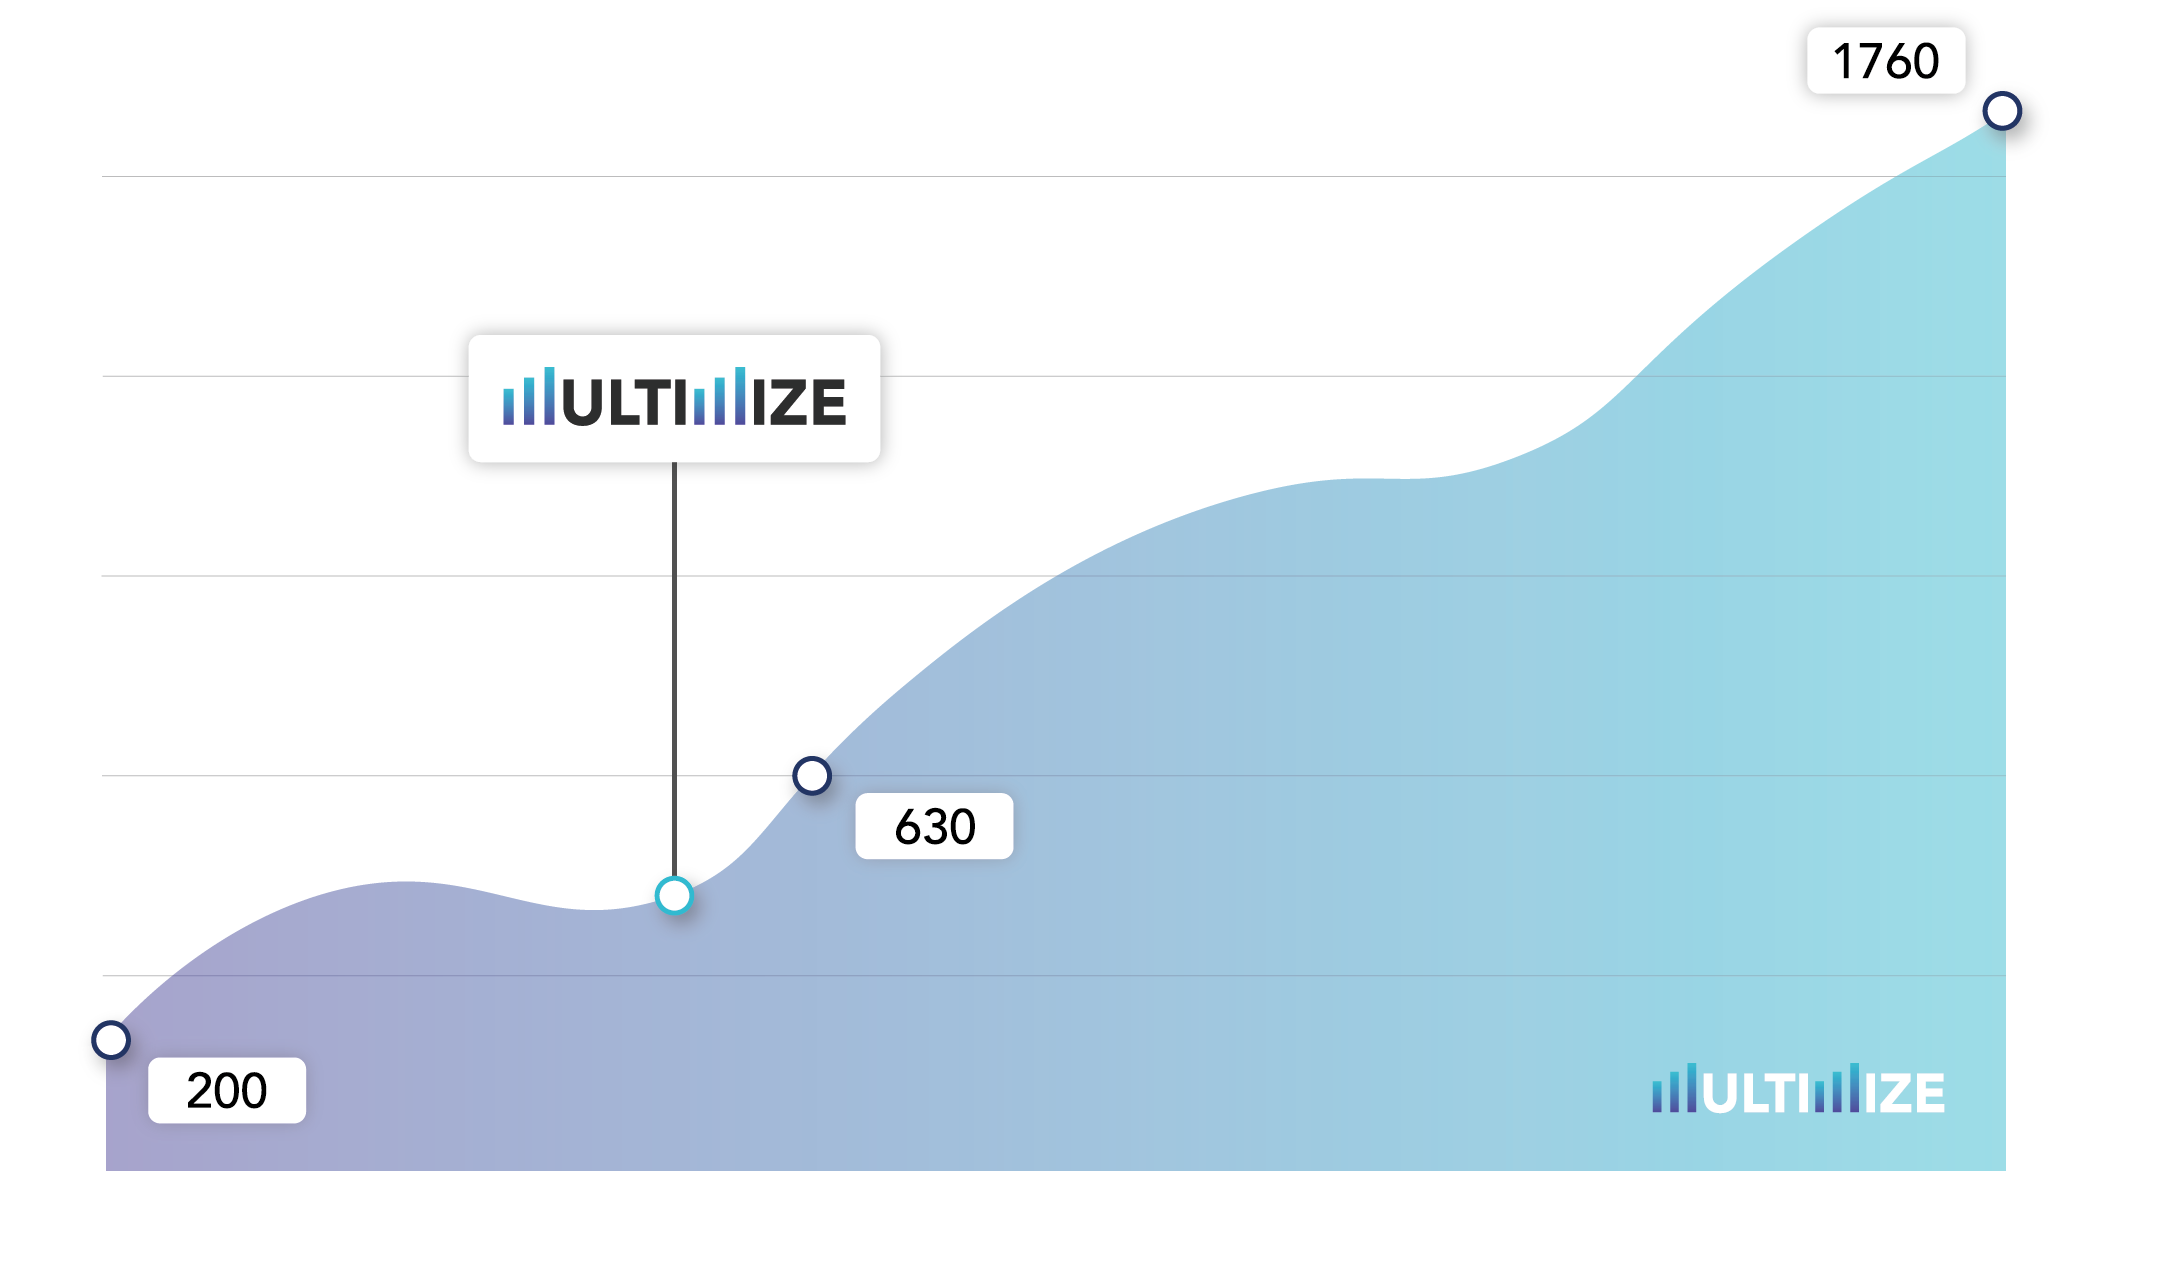 //multimize.de/wp-content/uploads/2018/08/multimize_graph.png